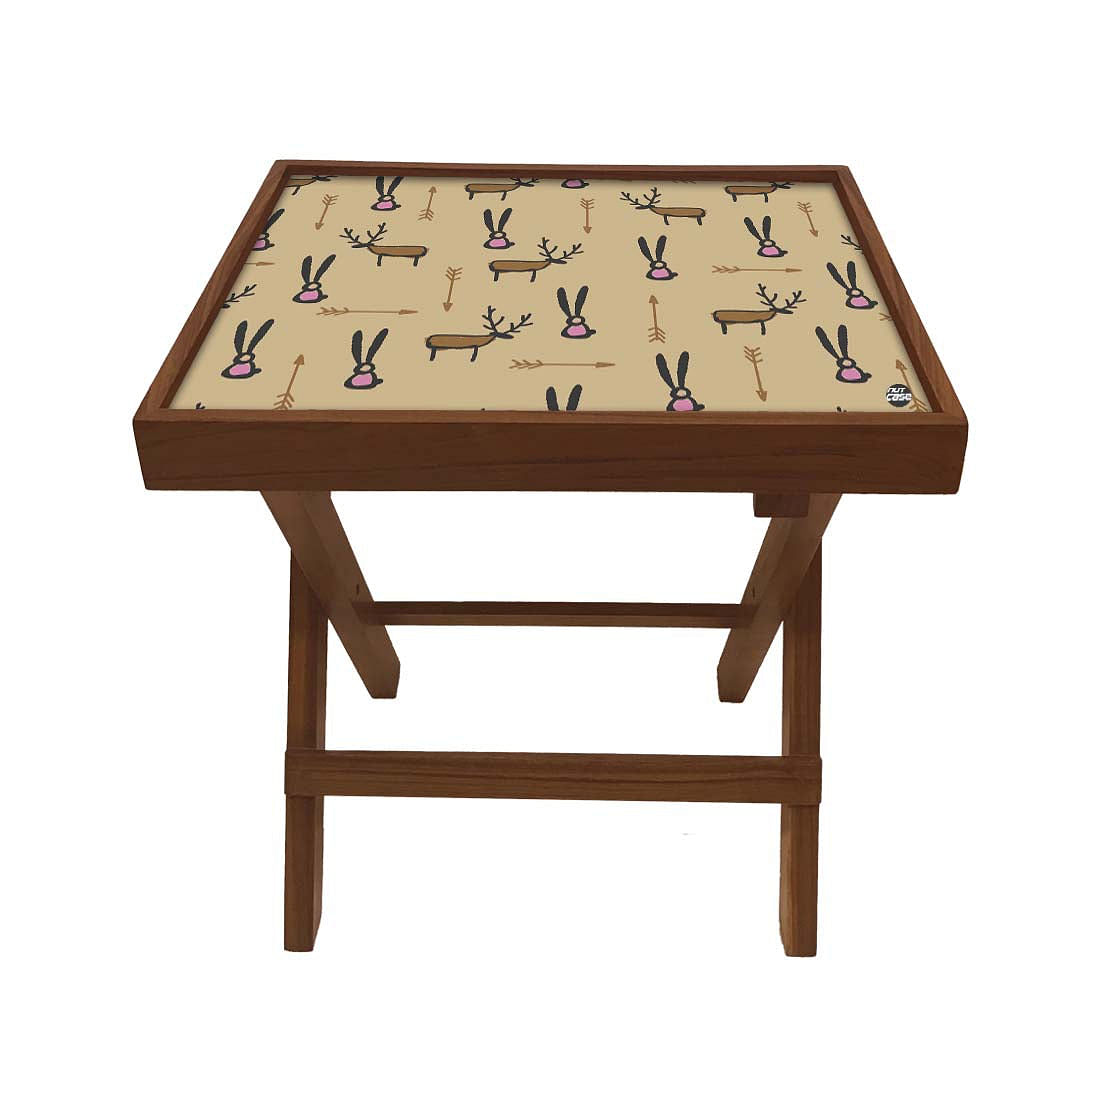 Folding Side Table in Bedroom - Teak Wood -Reindeer Nutcase